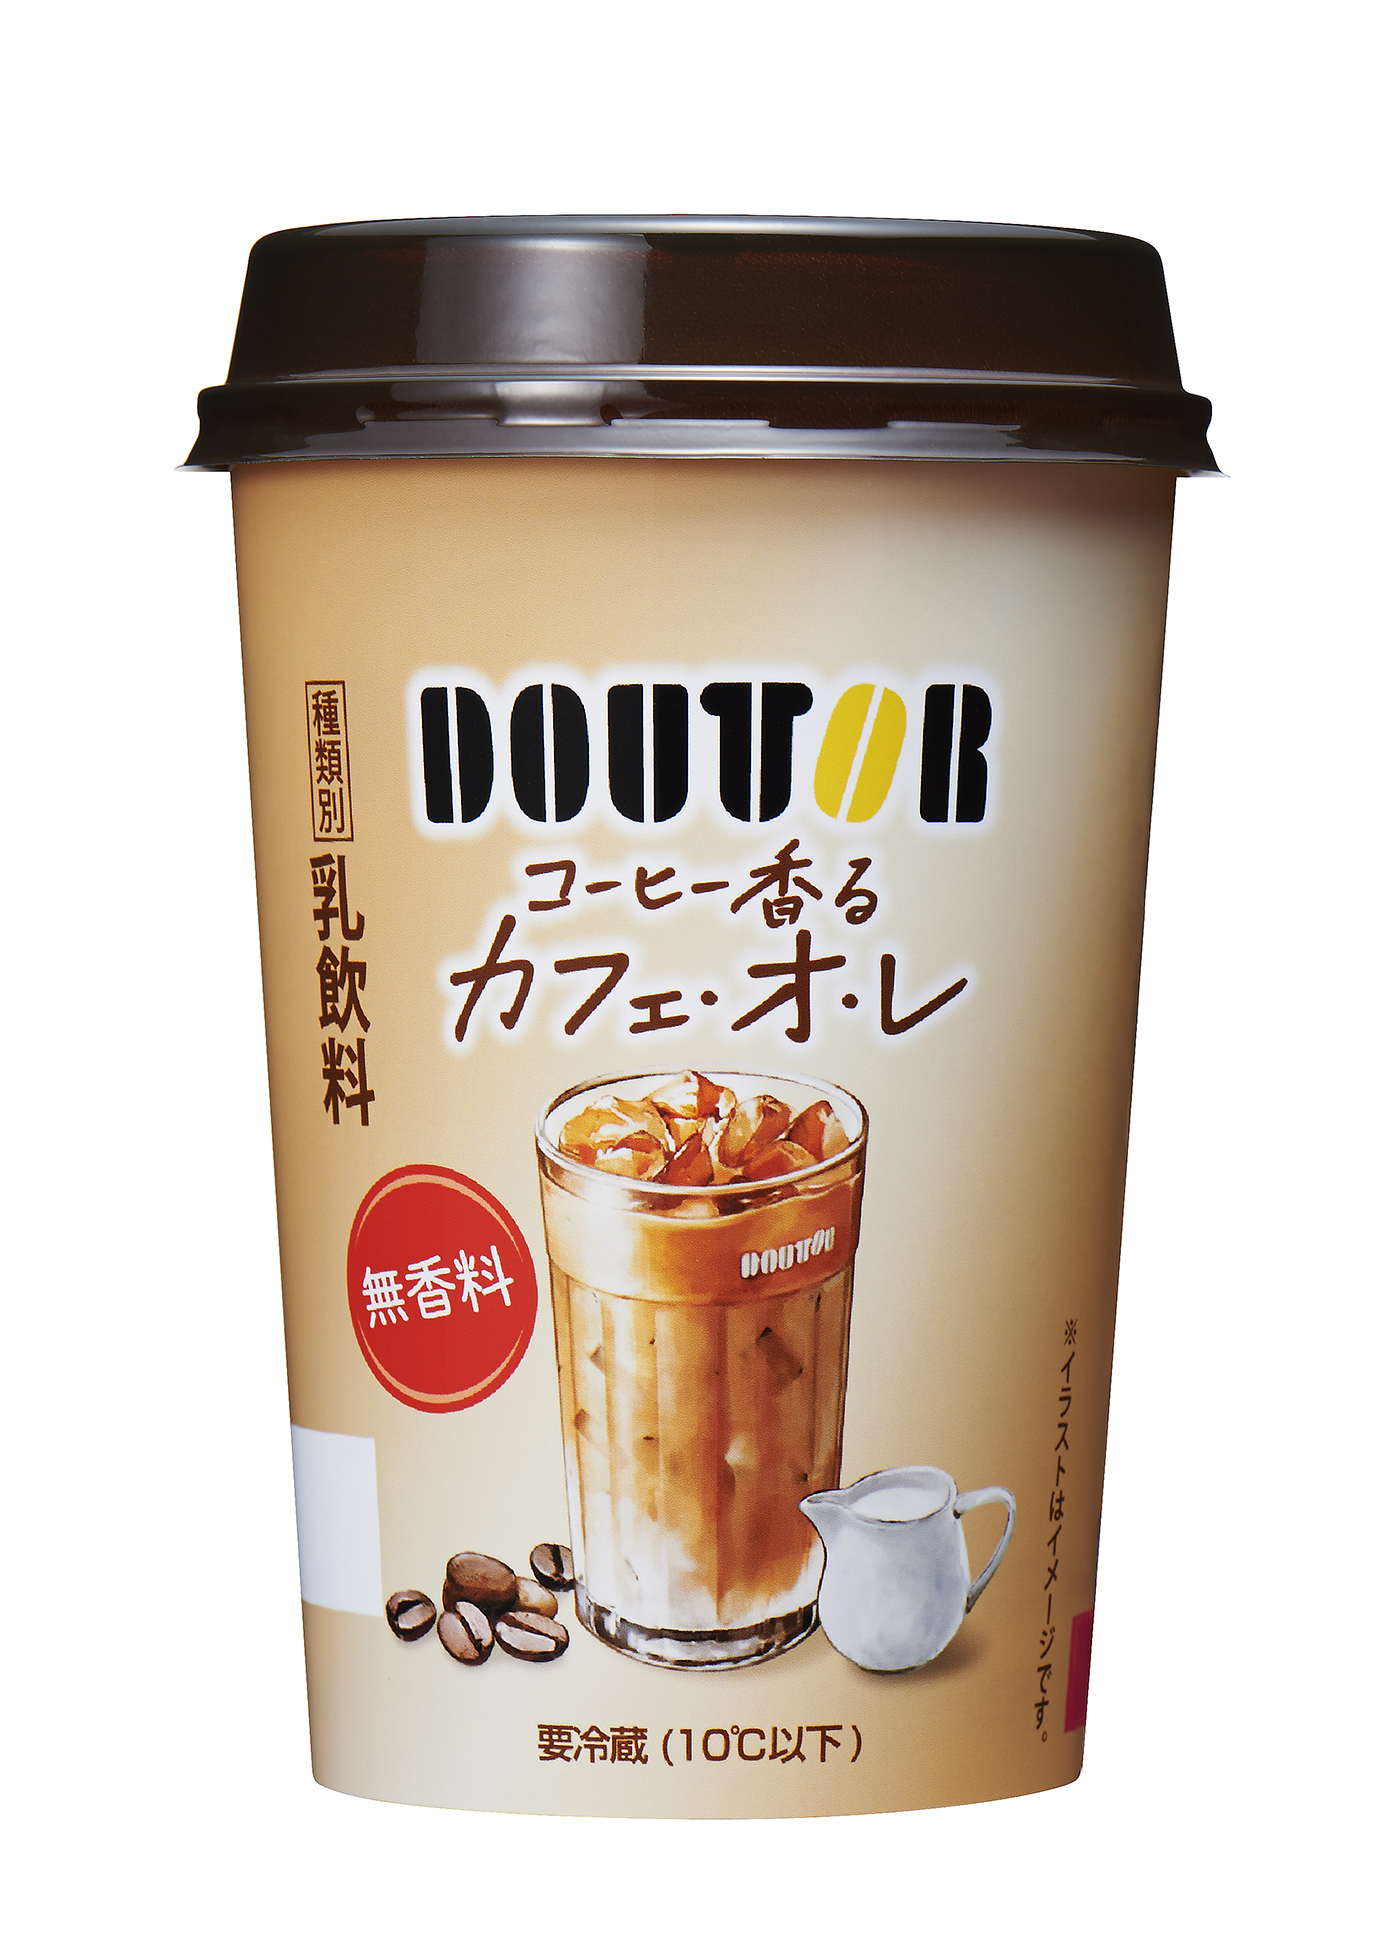 発売２０周年のロングセラー商品 ドトールブランドのチルドカップ飲料をリニューアル 株式会社ドトールコーヒーのプレスリリース